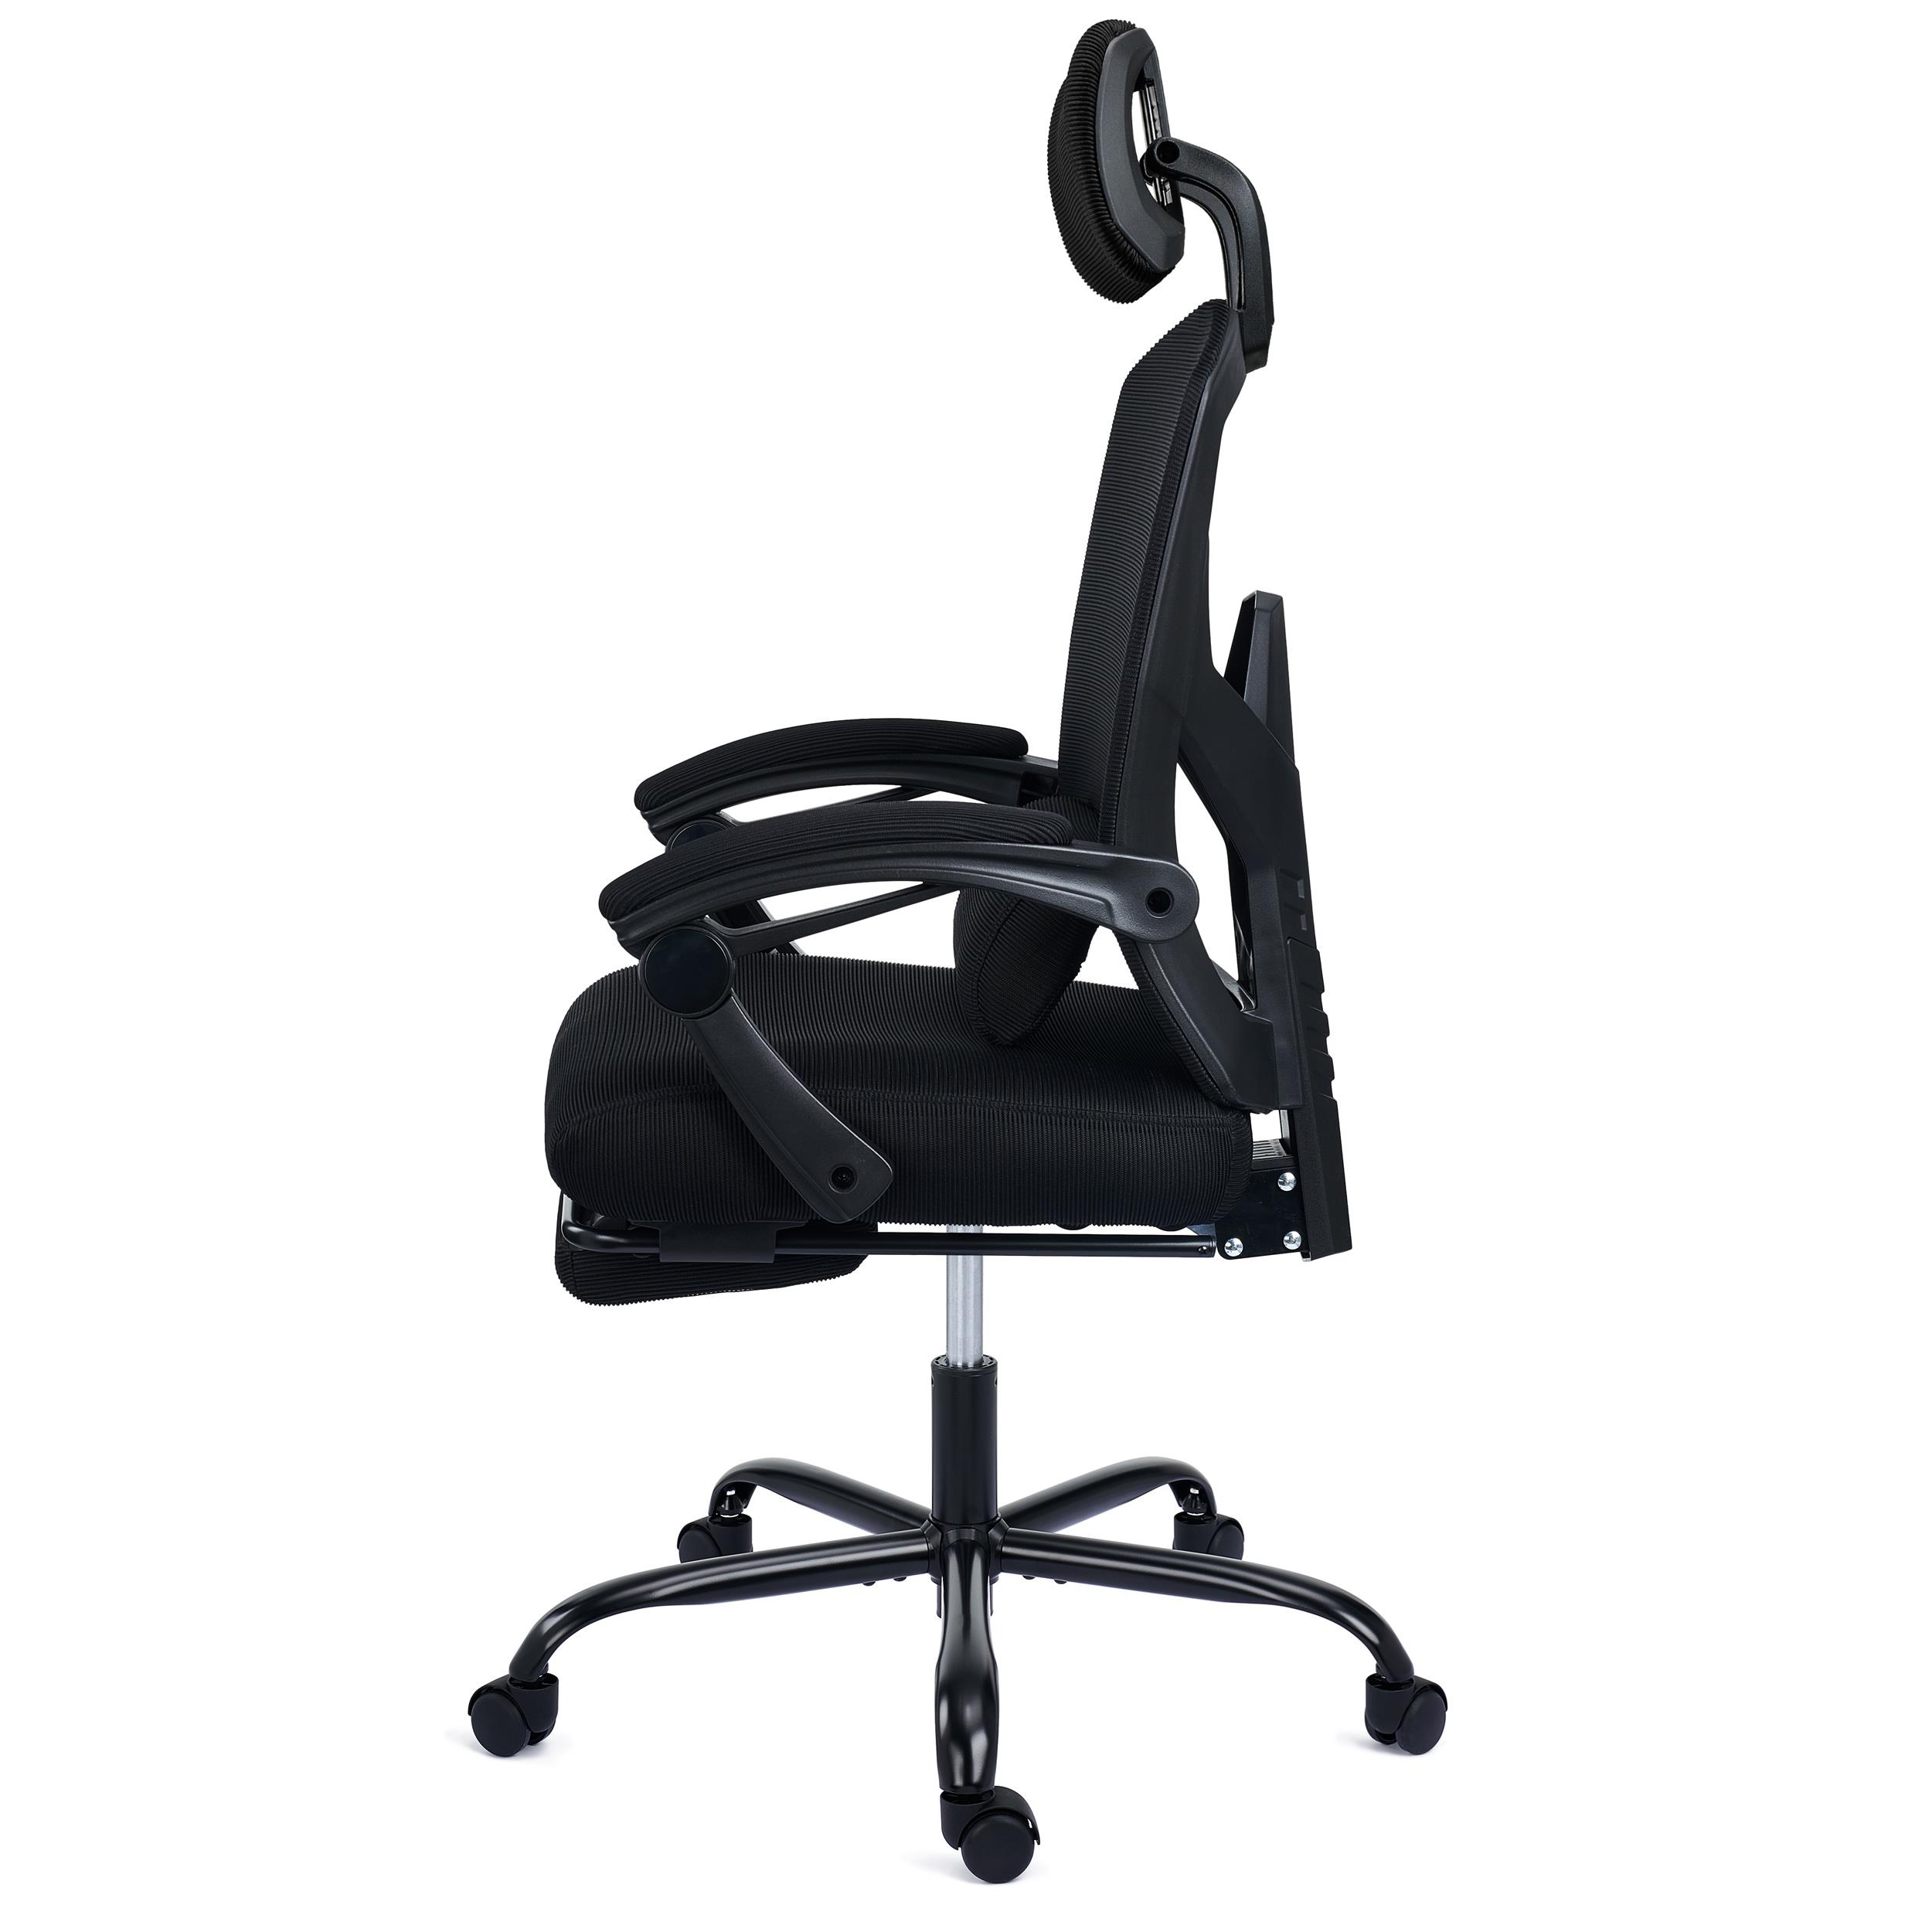 Chaise de bureau haute avec repose-pieds circulaire Ines - noir Moderne -  Songmics